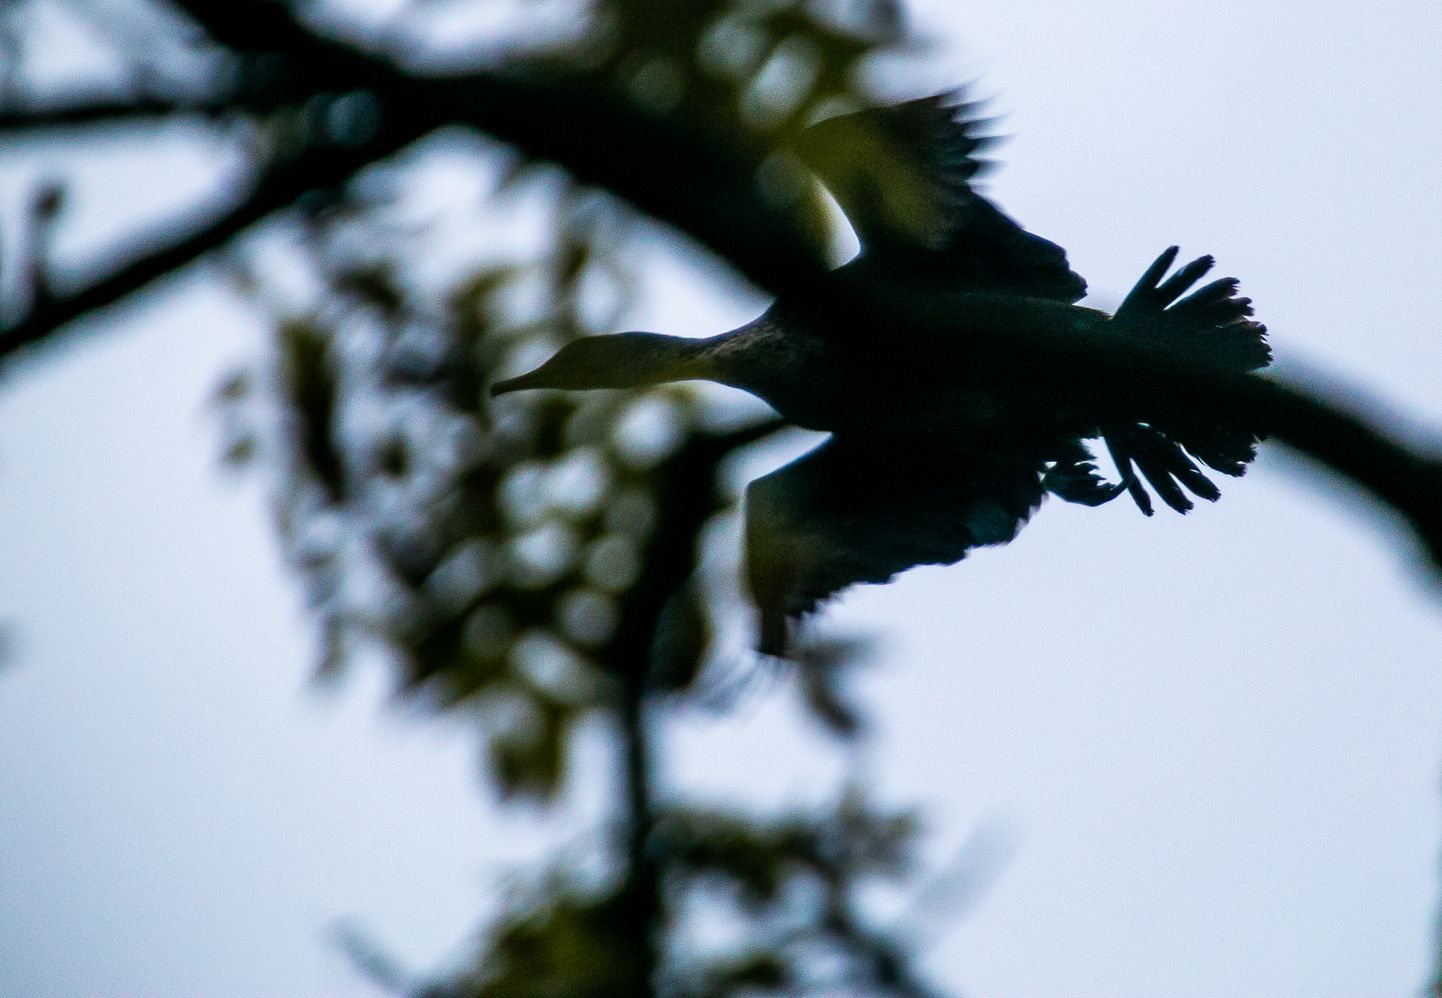 Eelnõu kohaselt lubataks küttida näiteks kormorane, kes võivad hävitada Matsalus pesitsevate lindude mune.